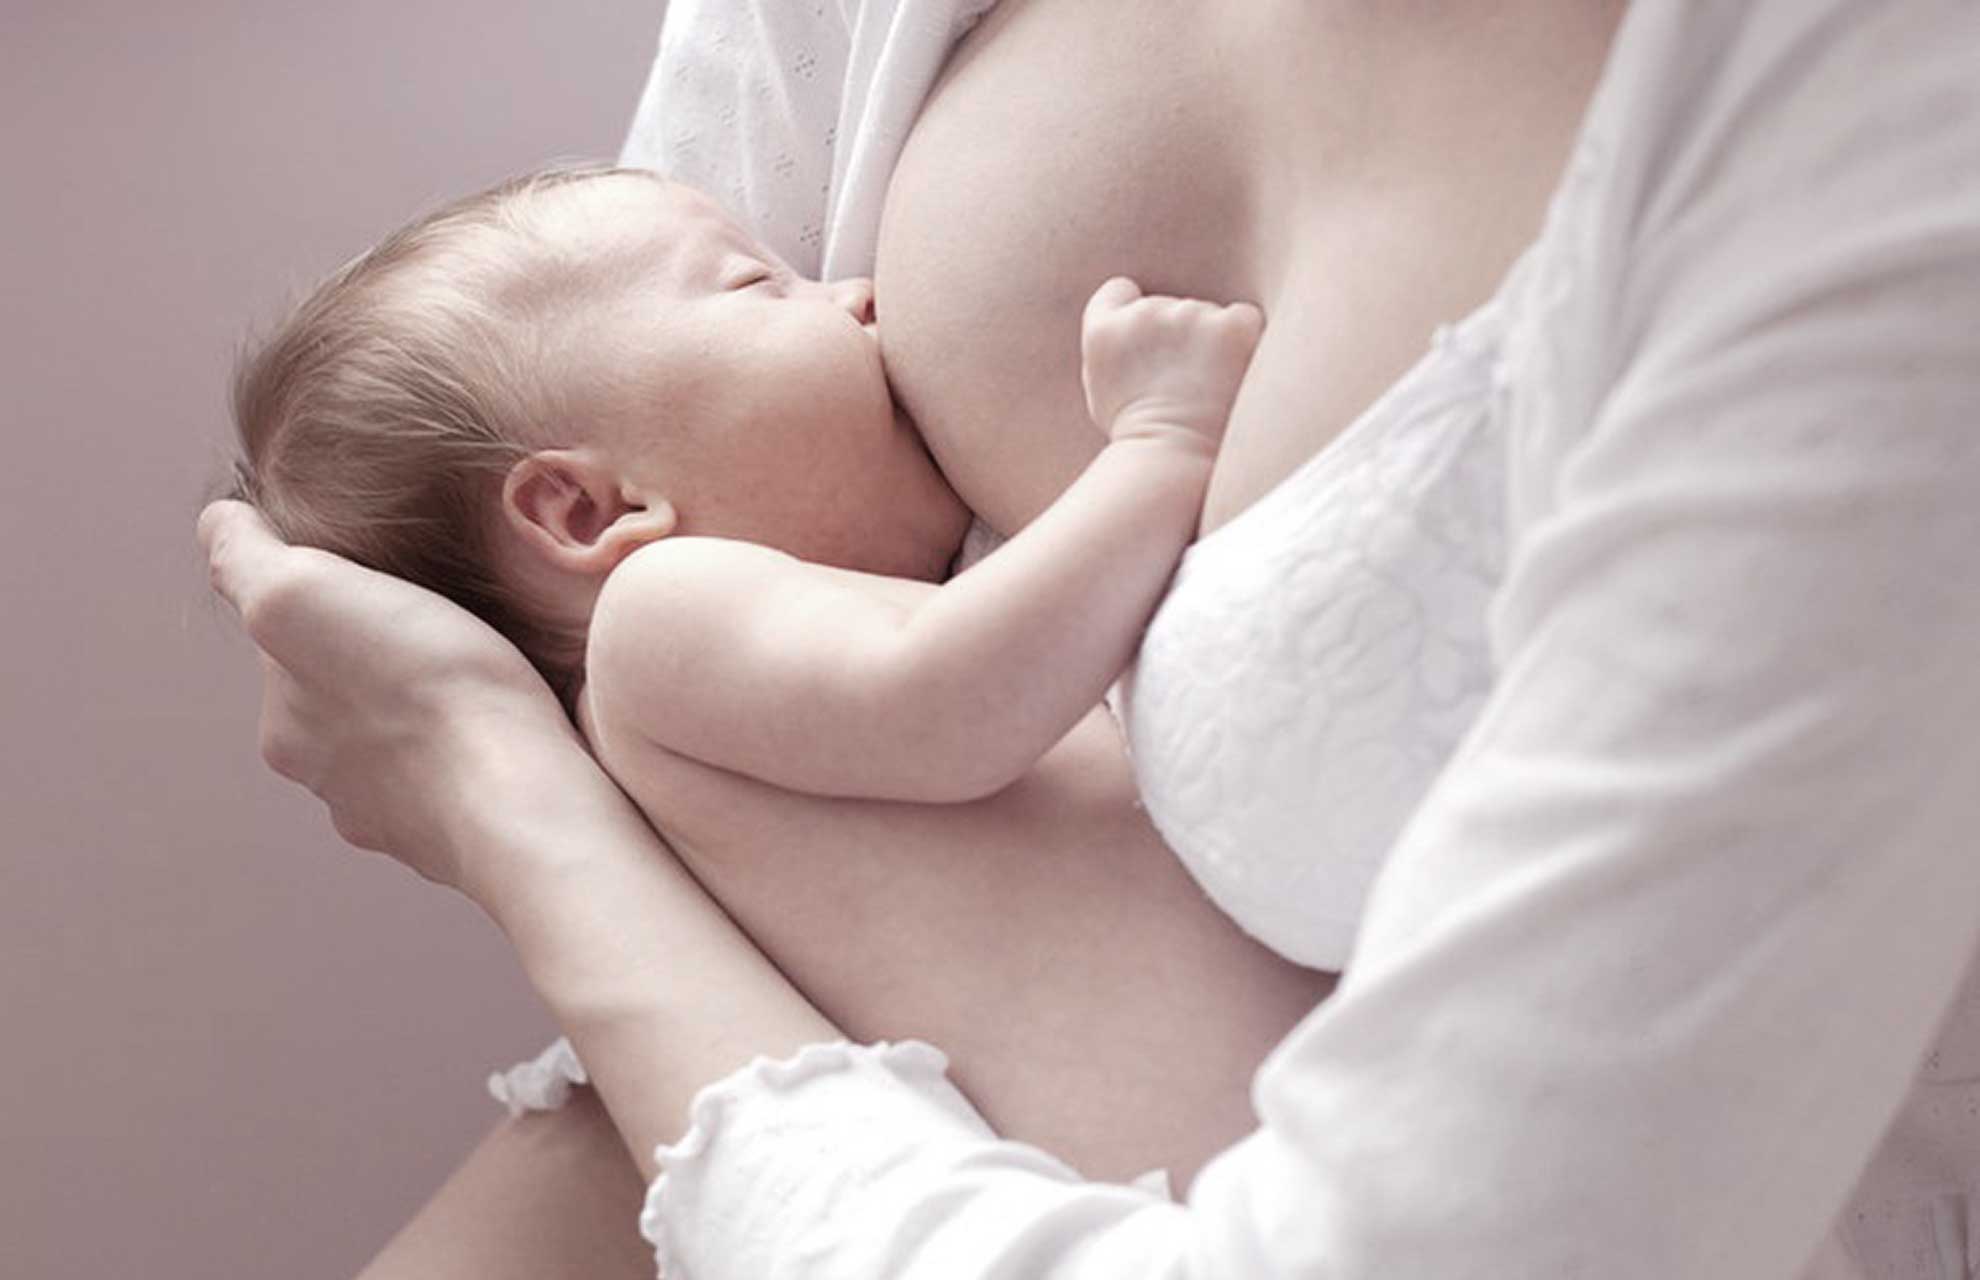 Αρεταίειο νοσοκομείο: Δίπλα στη μητέρα με την προώθηση του θηλασμού